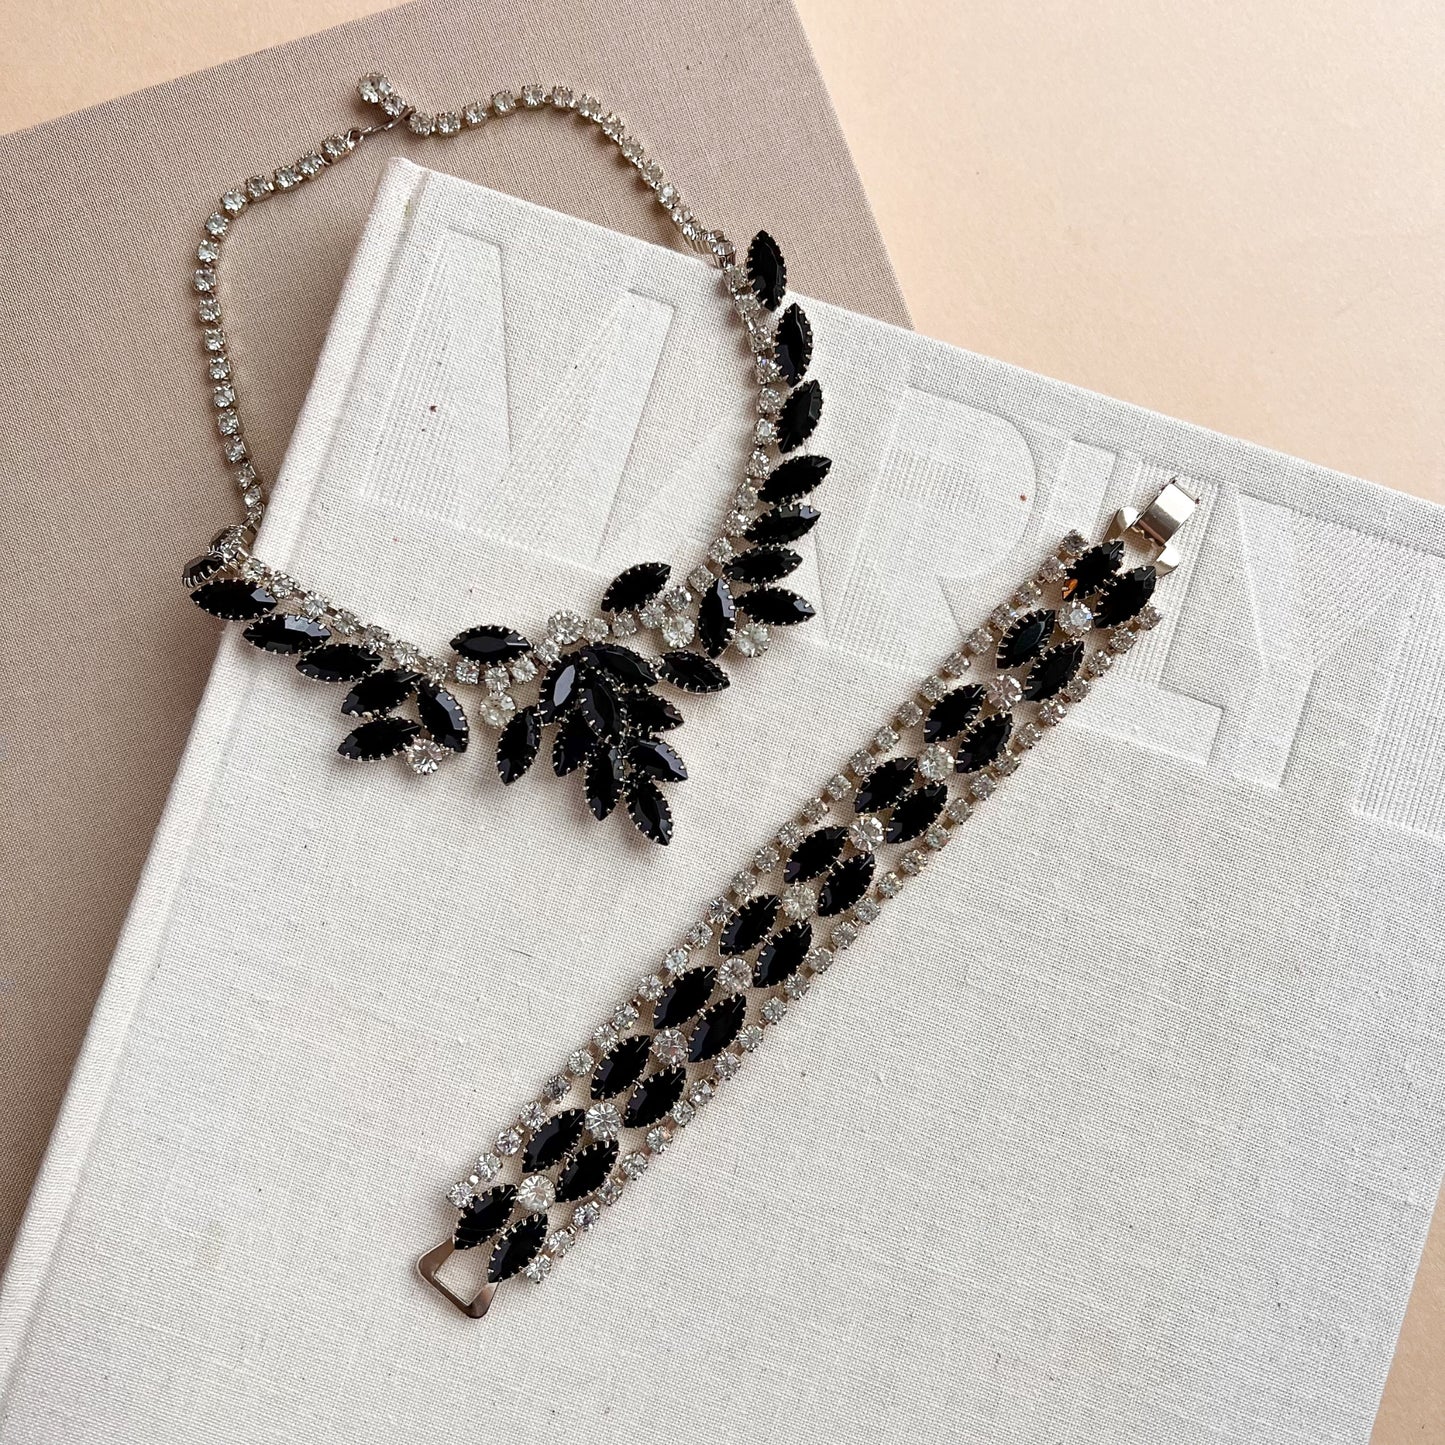 1950s Onyx and Rhinestone Necklace and Bracelet Set